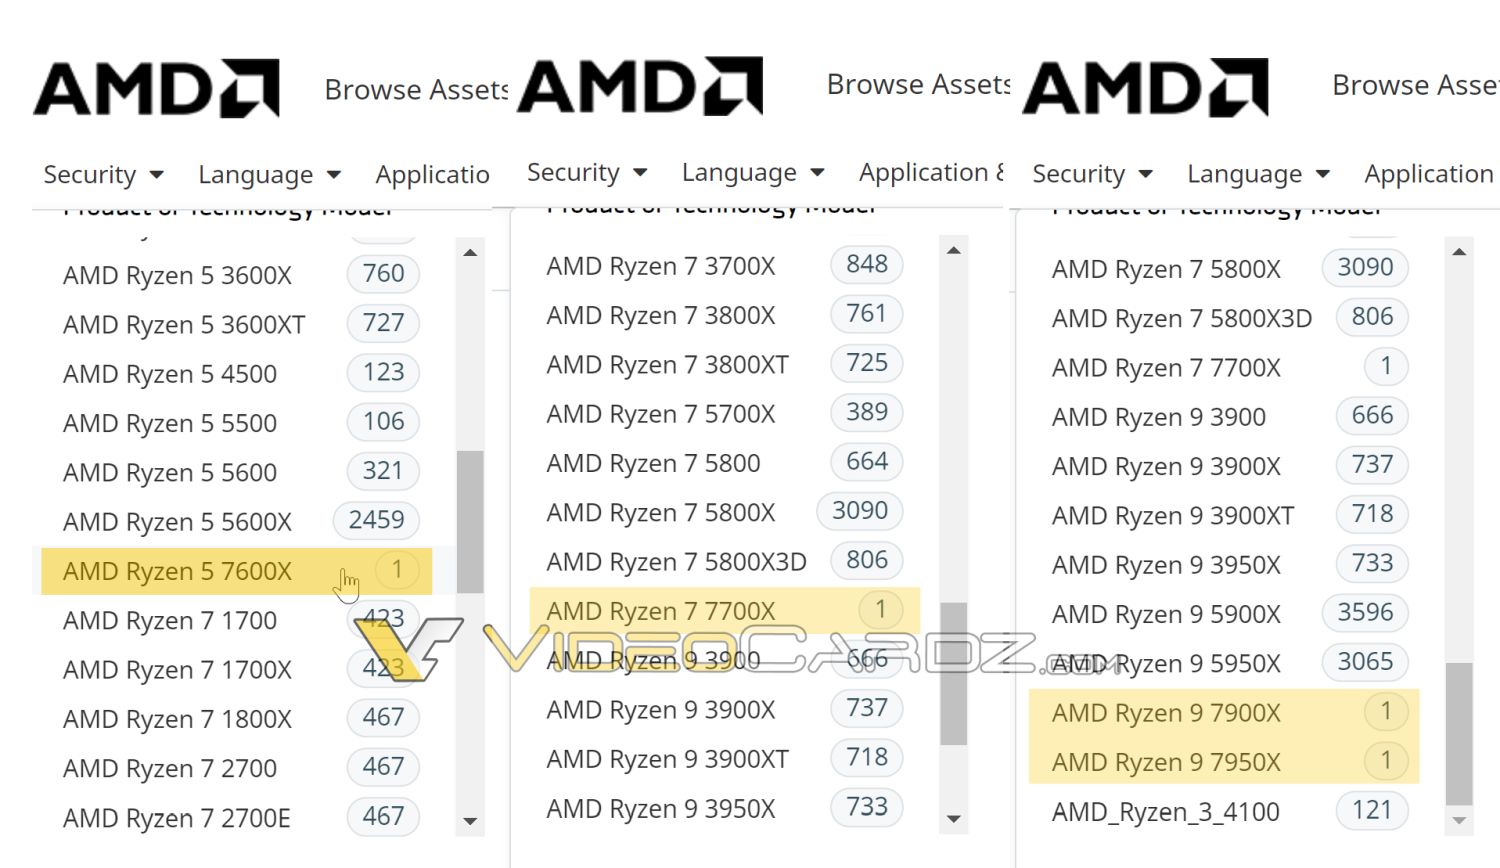 AMD confirme apparemment la majorité des SKU de la série Ryzen 7000